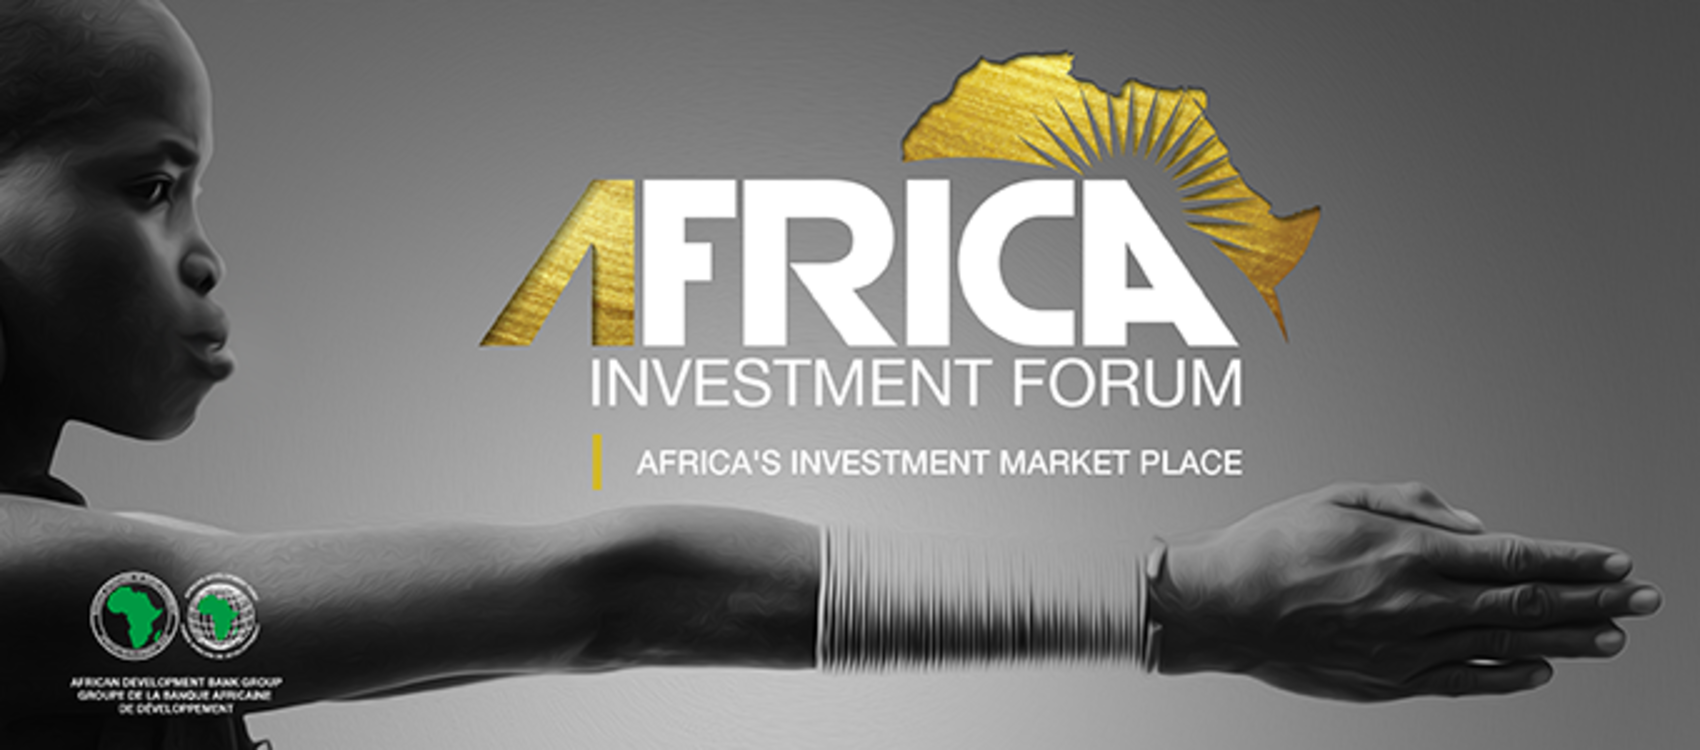 L’Africa Investment Forum tient sa deuxième édition à Johannesburg